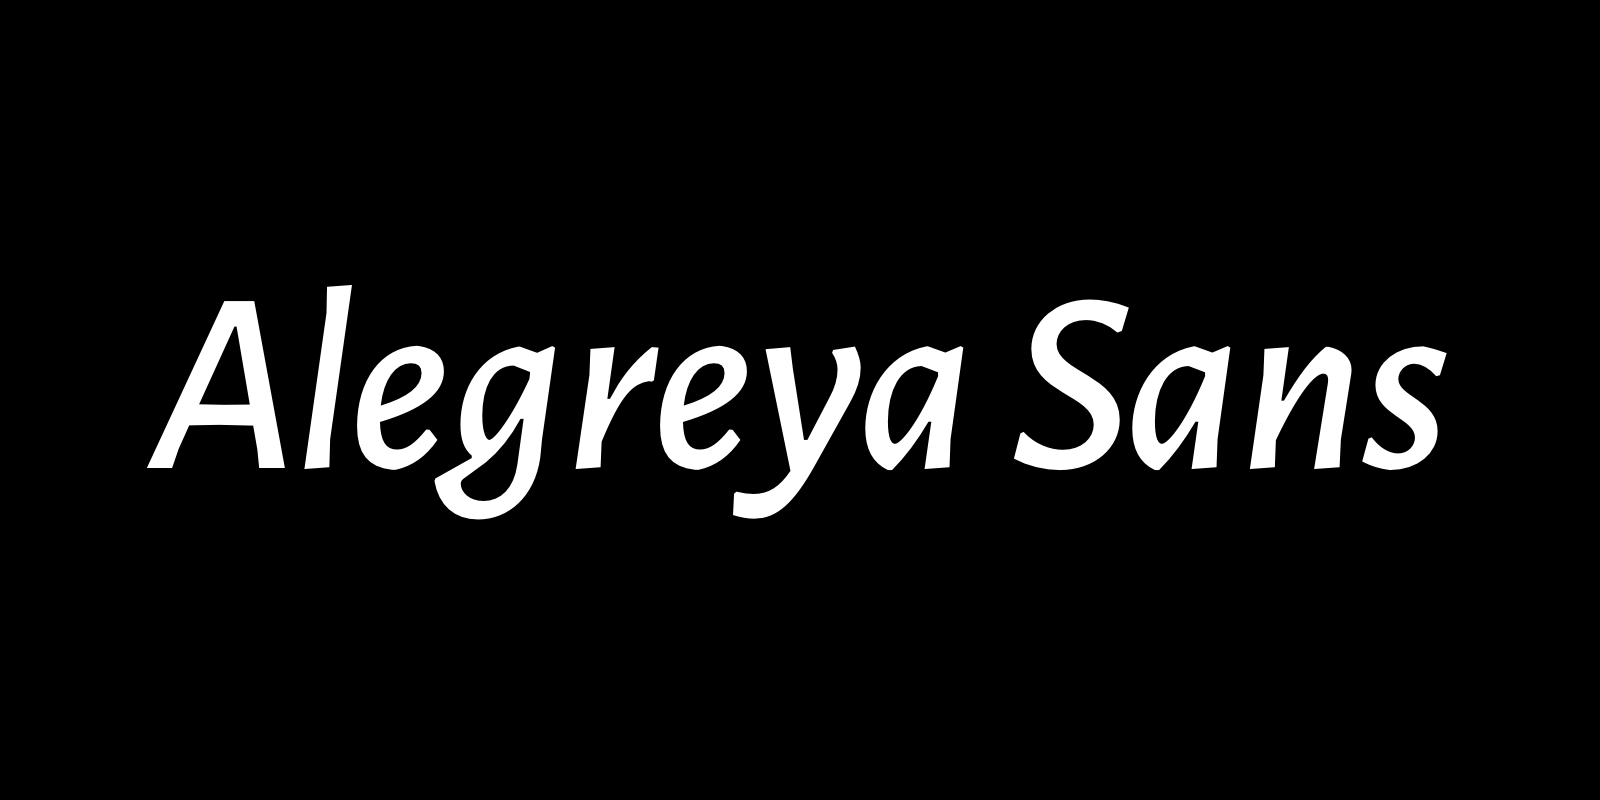 Alegreya Sans by Huerta Tipográfica